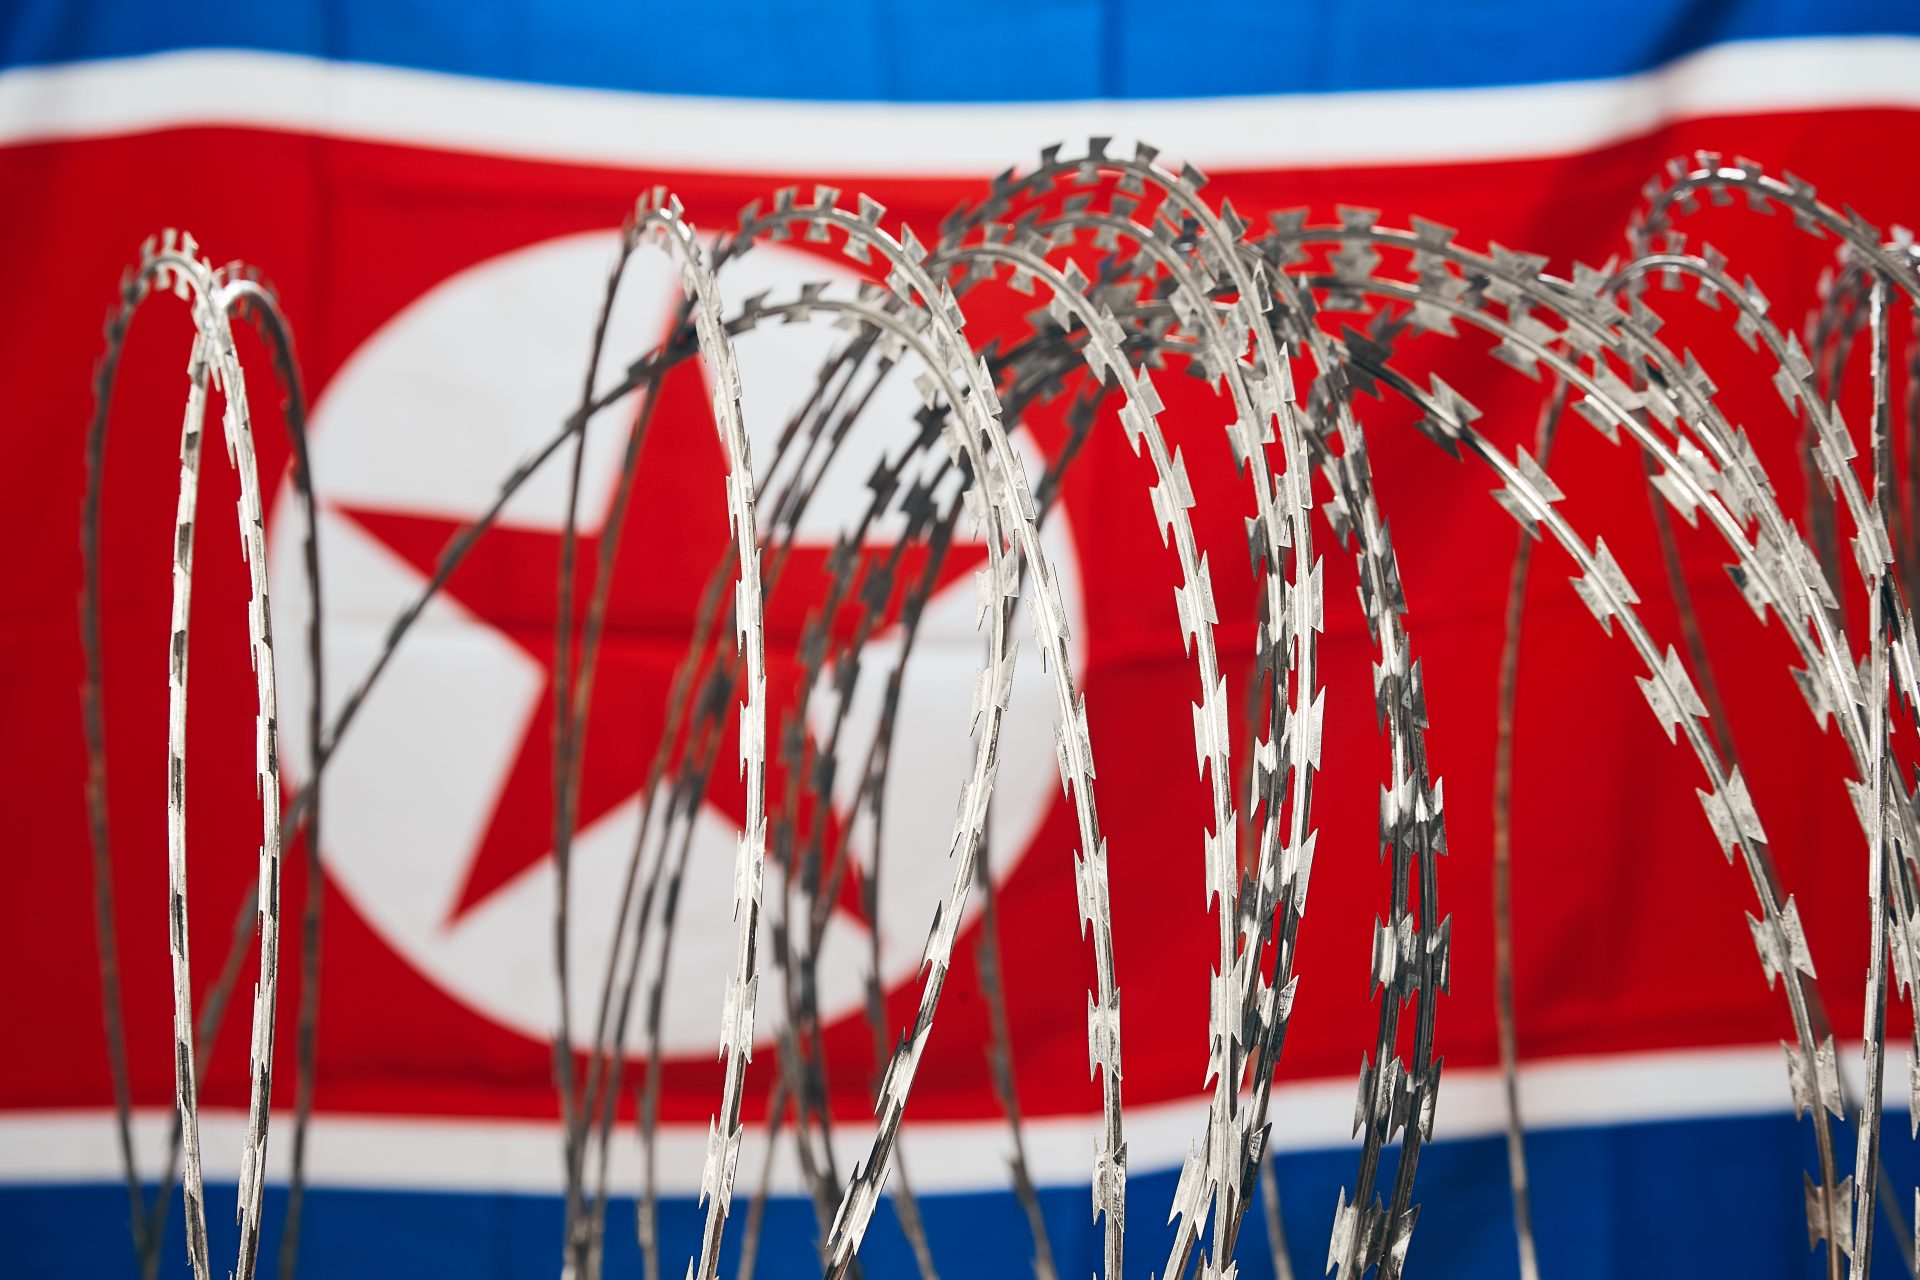 Sjojgoe was de eerste buitenlandse bezoeker aan Noord-Korea na de pandemie